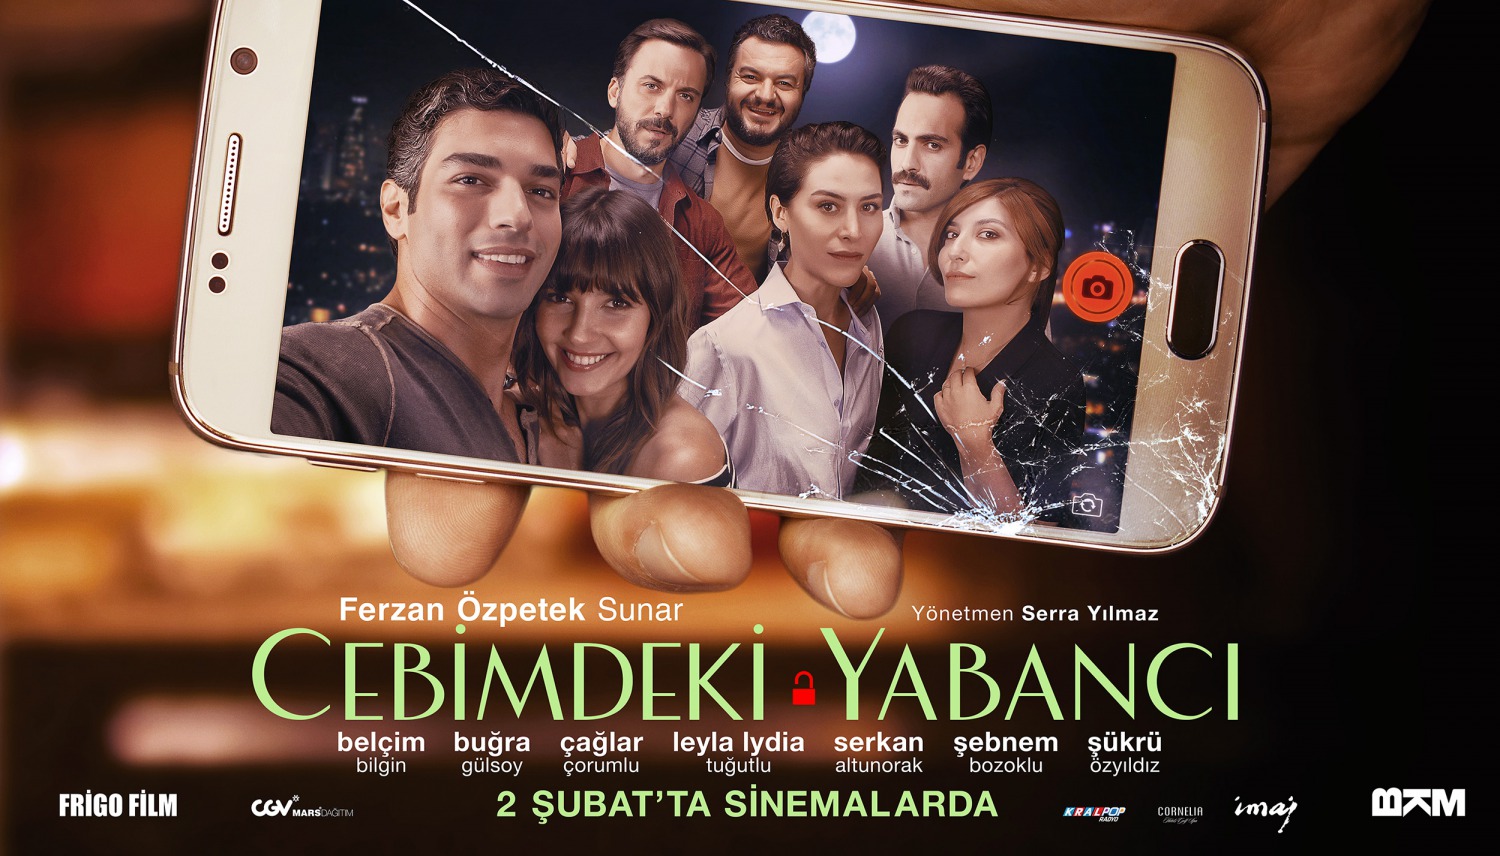 Extra Large Movie Poster Image for Cebimdeki Yabancı (#3 of 10)